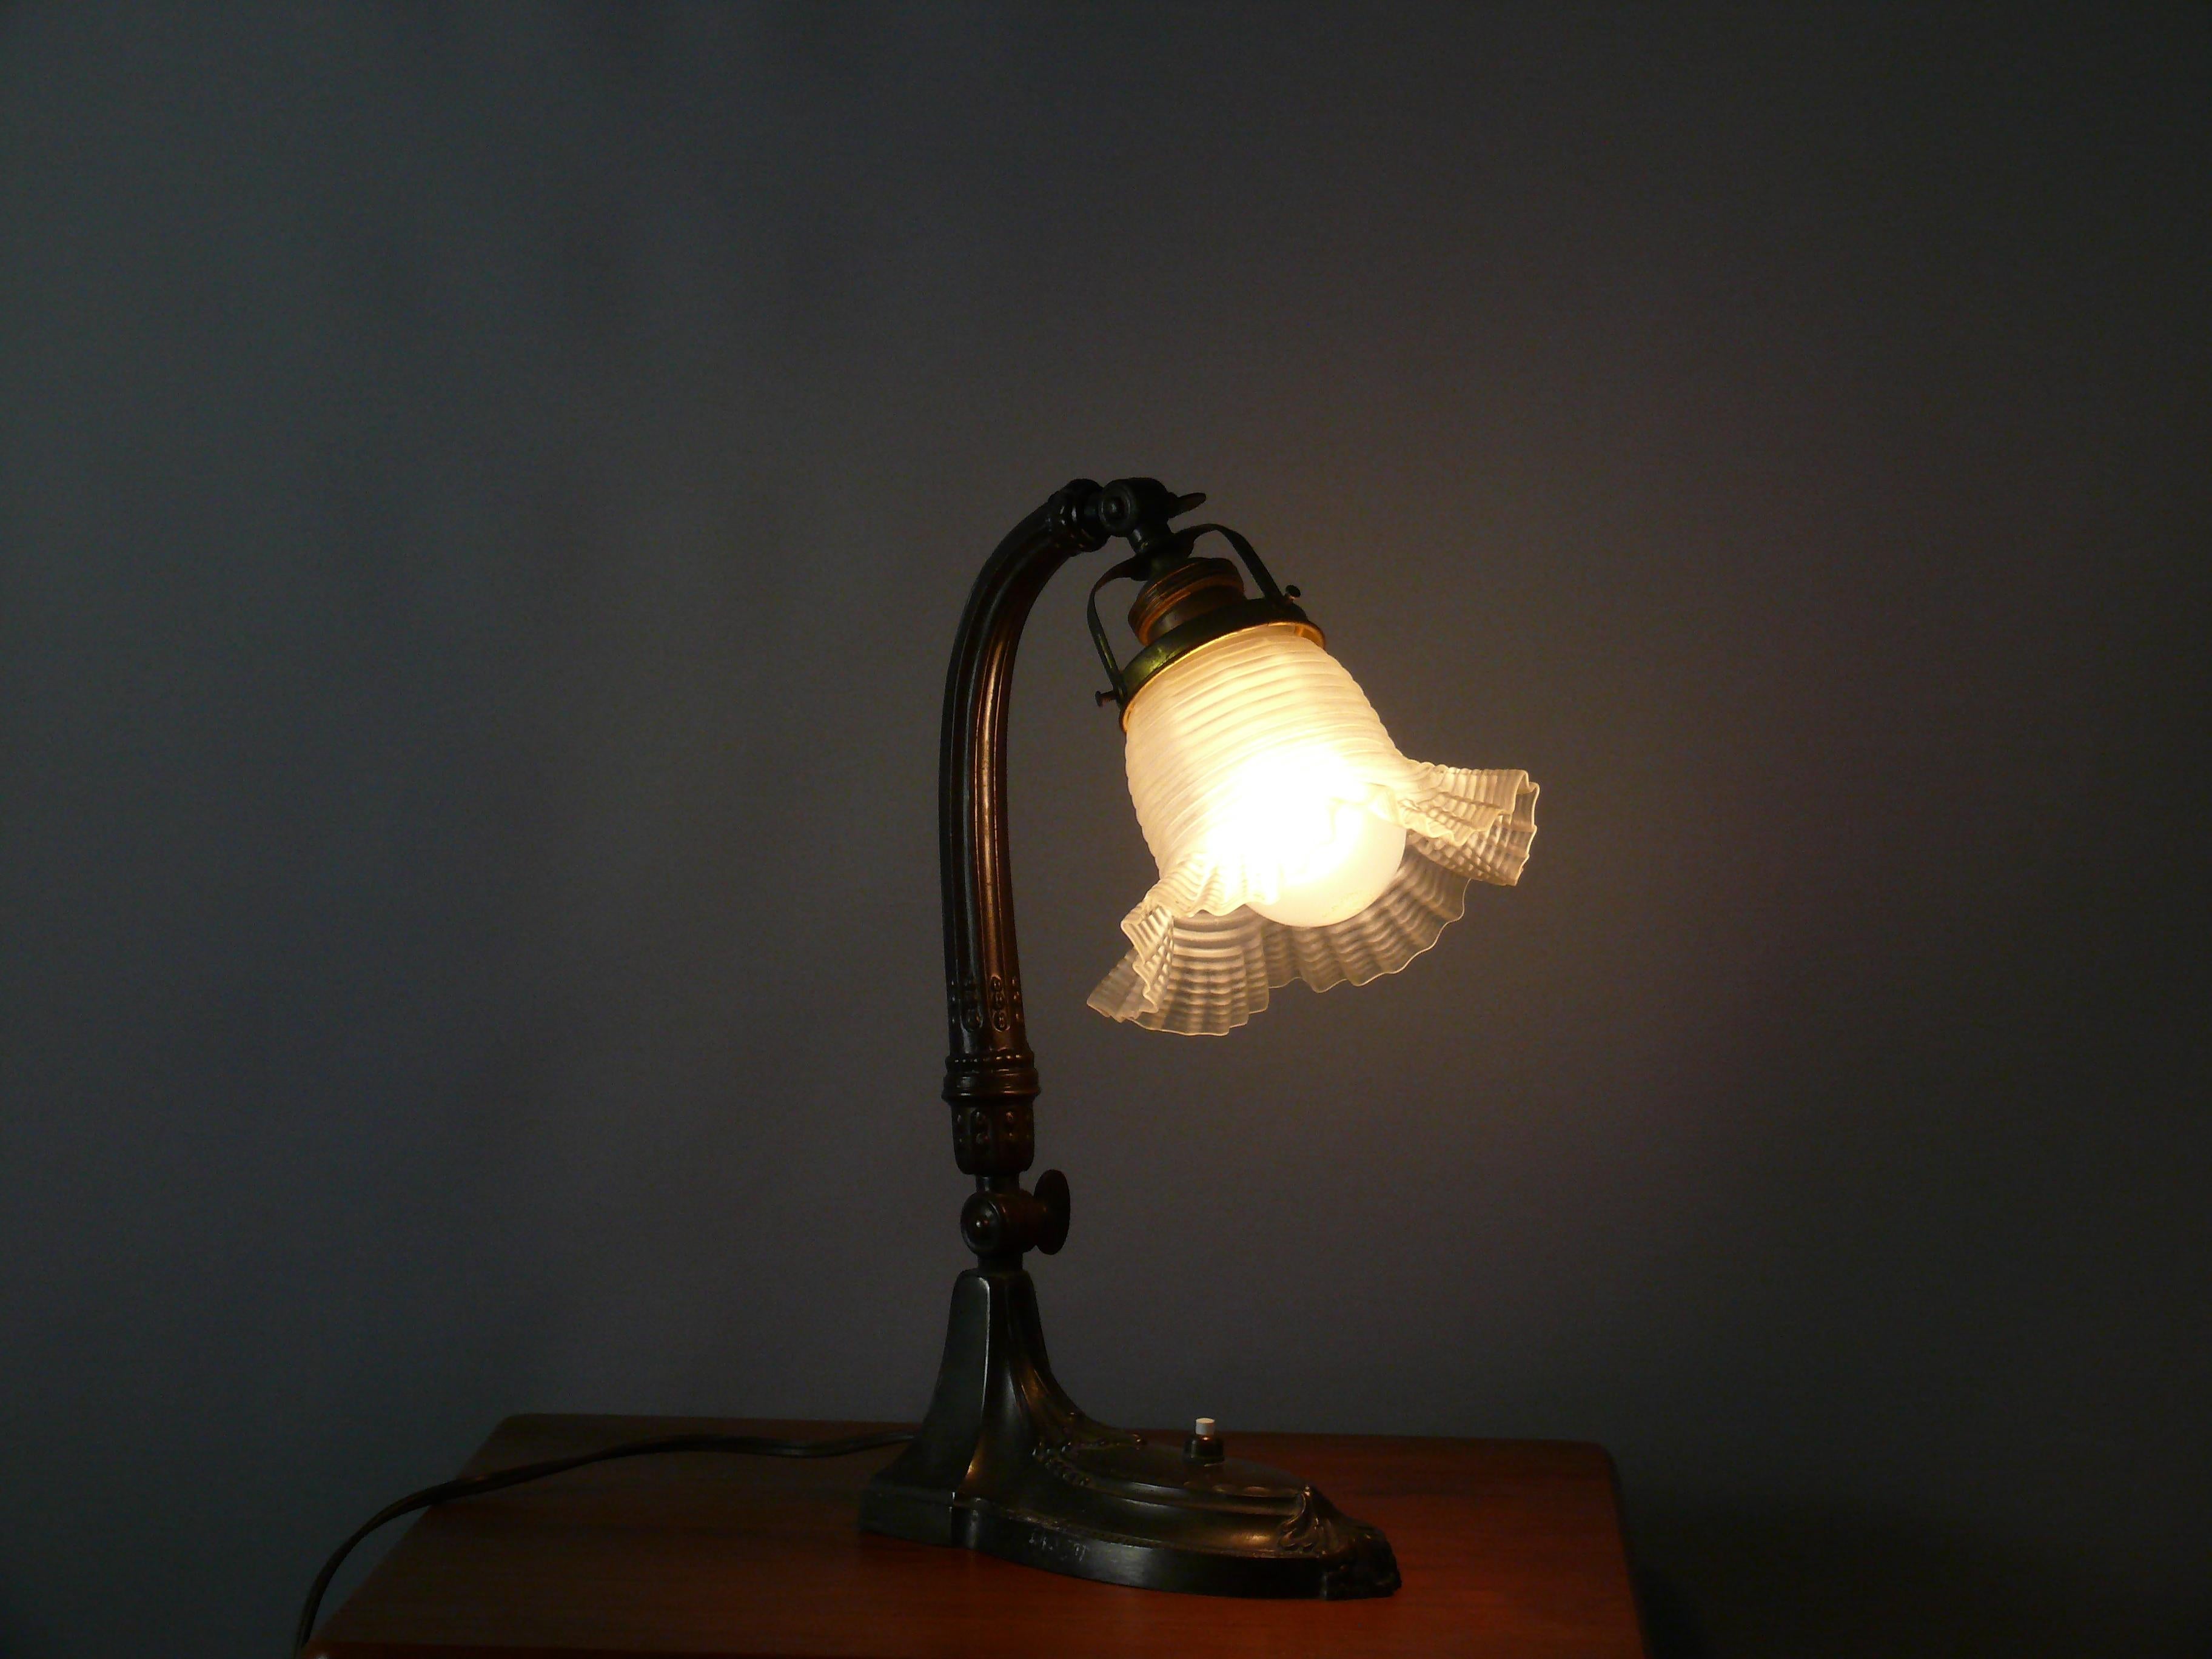 Große originale Jugendstil-Tischlampe / Klavierlampe aus den 1910er Jahren in gutem Zustand. Die Leuchte ist aus Zinkdruckguss in Bronzeoptik gefertigt und hat einen blumenförmigen Glasschirm. Der Schirm ist in gutem Zustand. Sie kann über ein